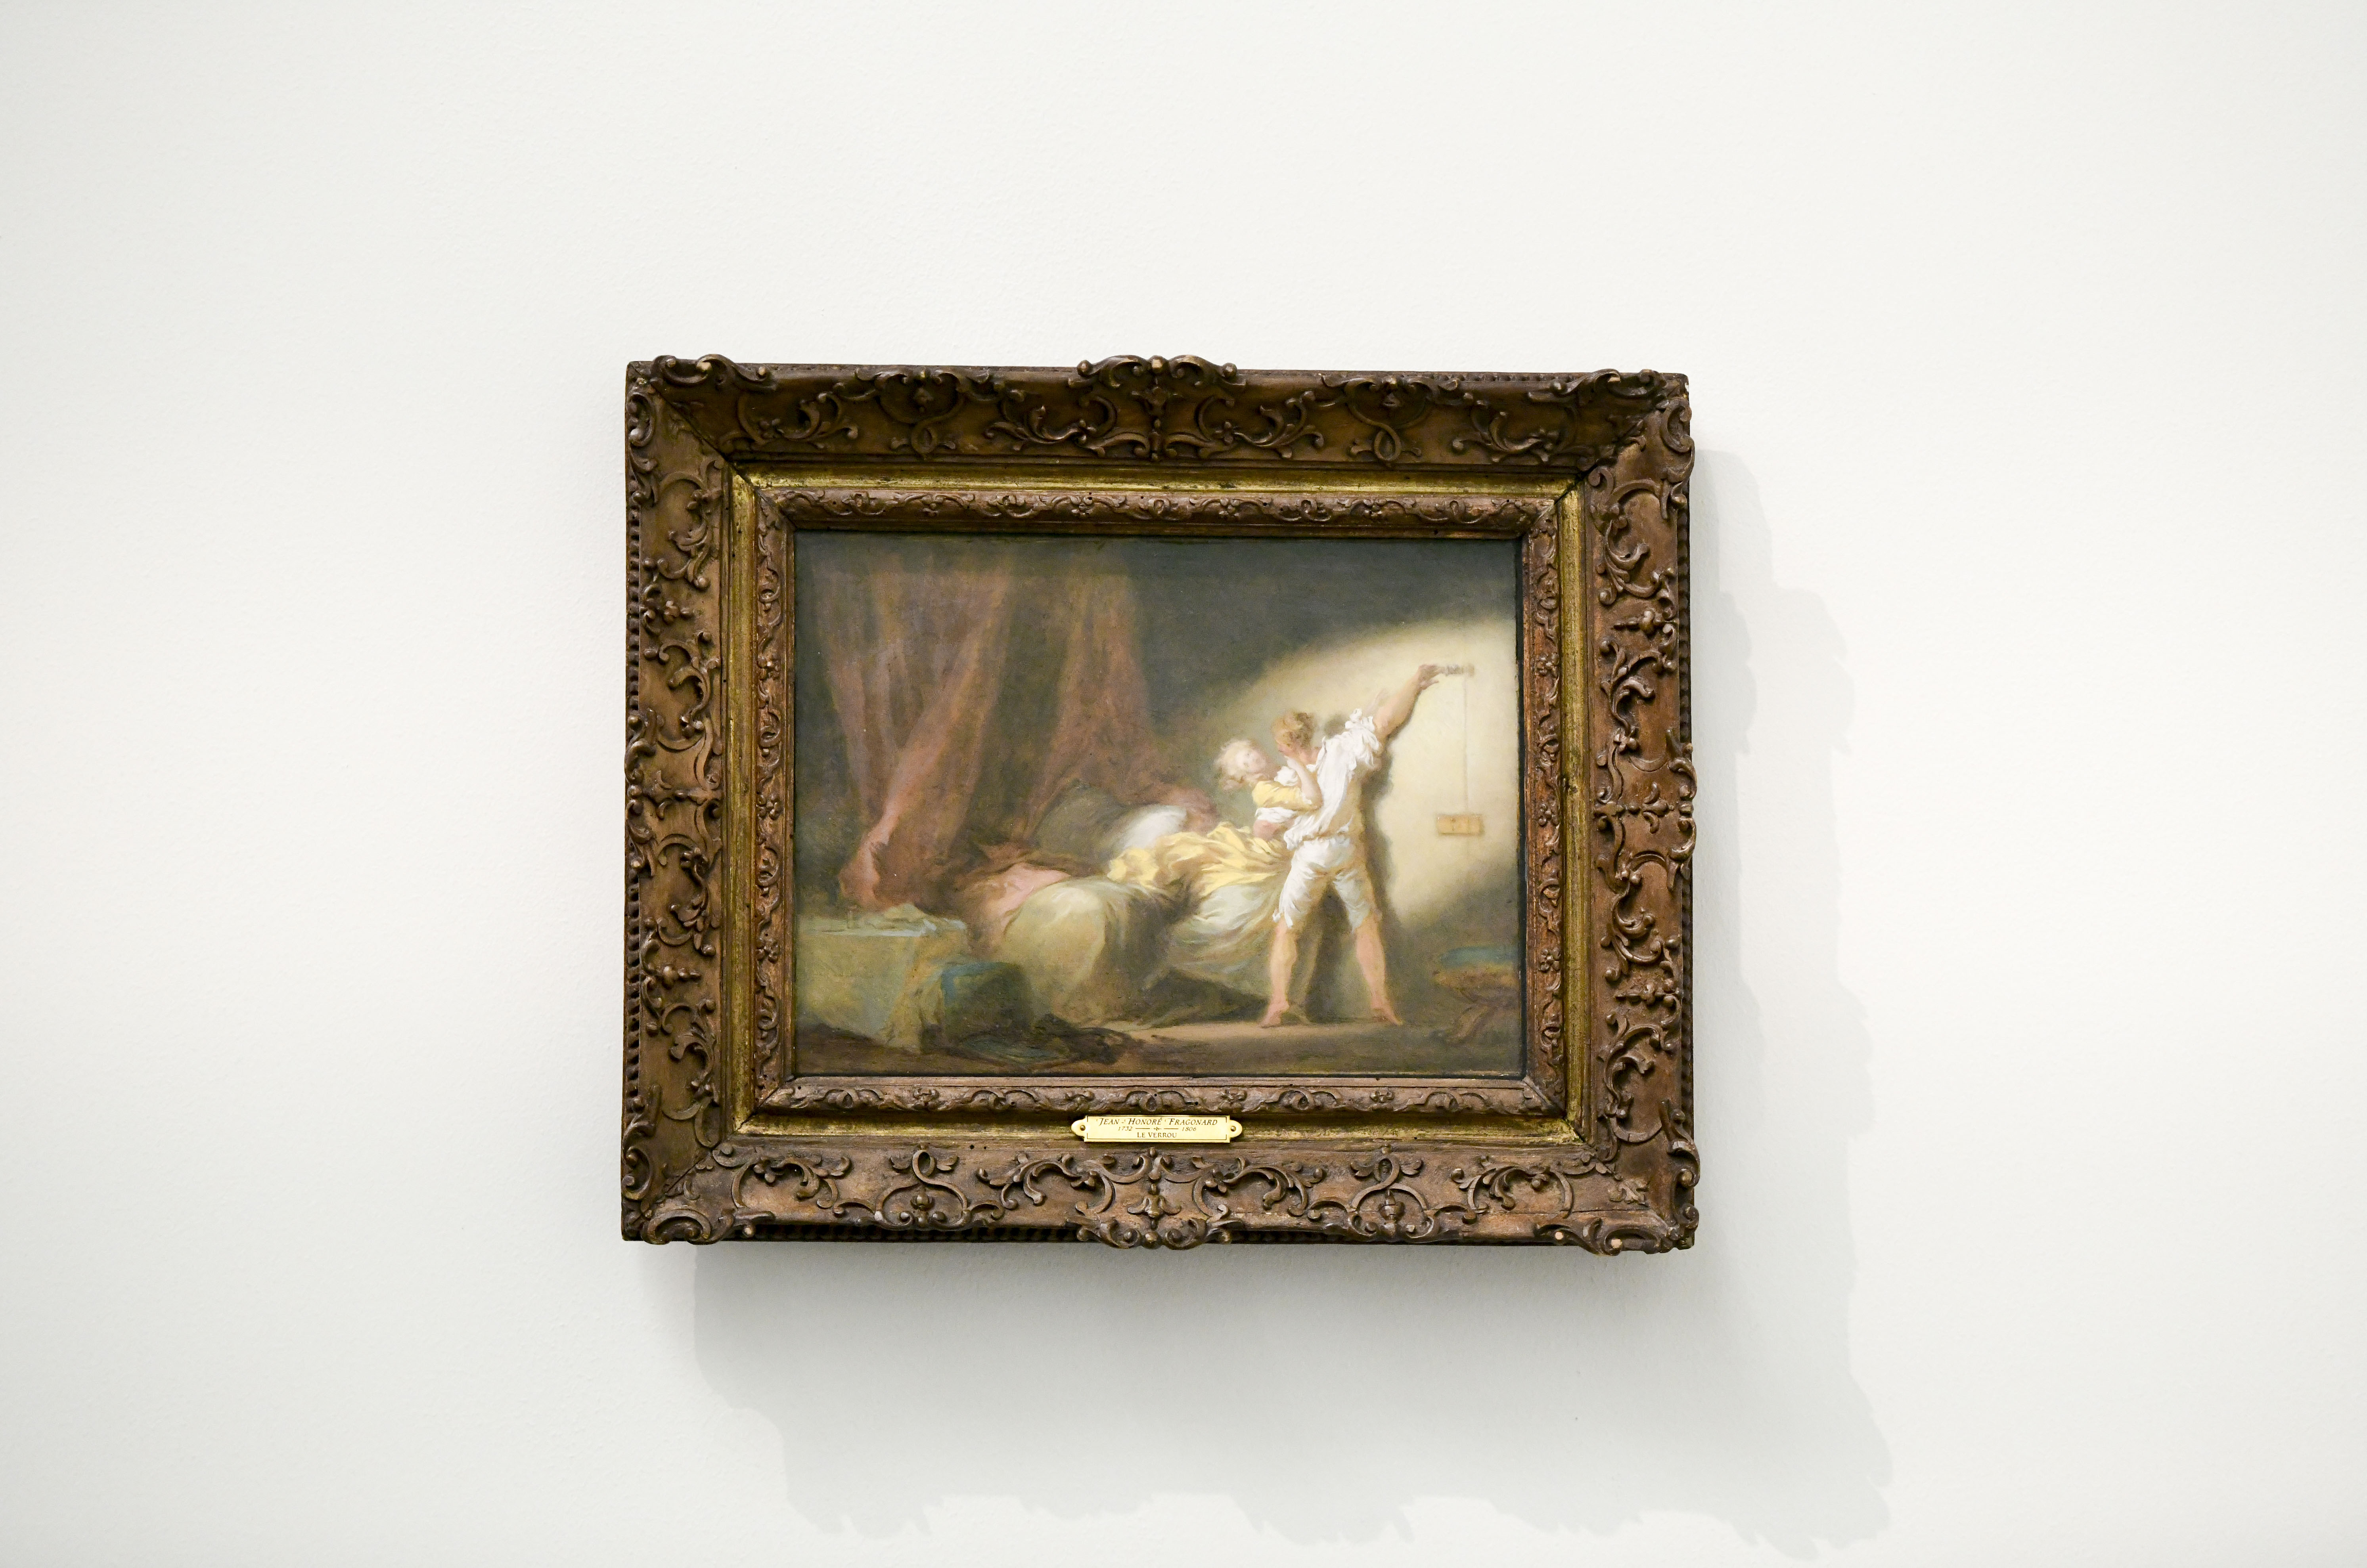 Le musée des Beaux-Arts de Lyon acquiert deux tableaux de Fragonard